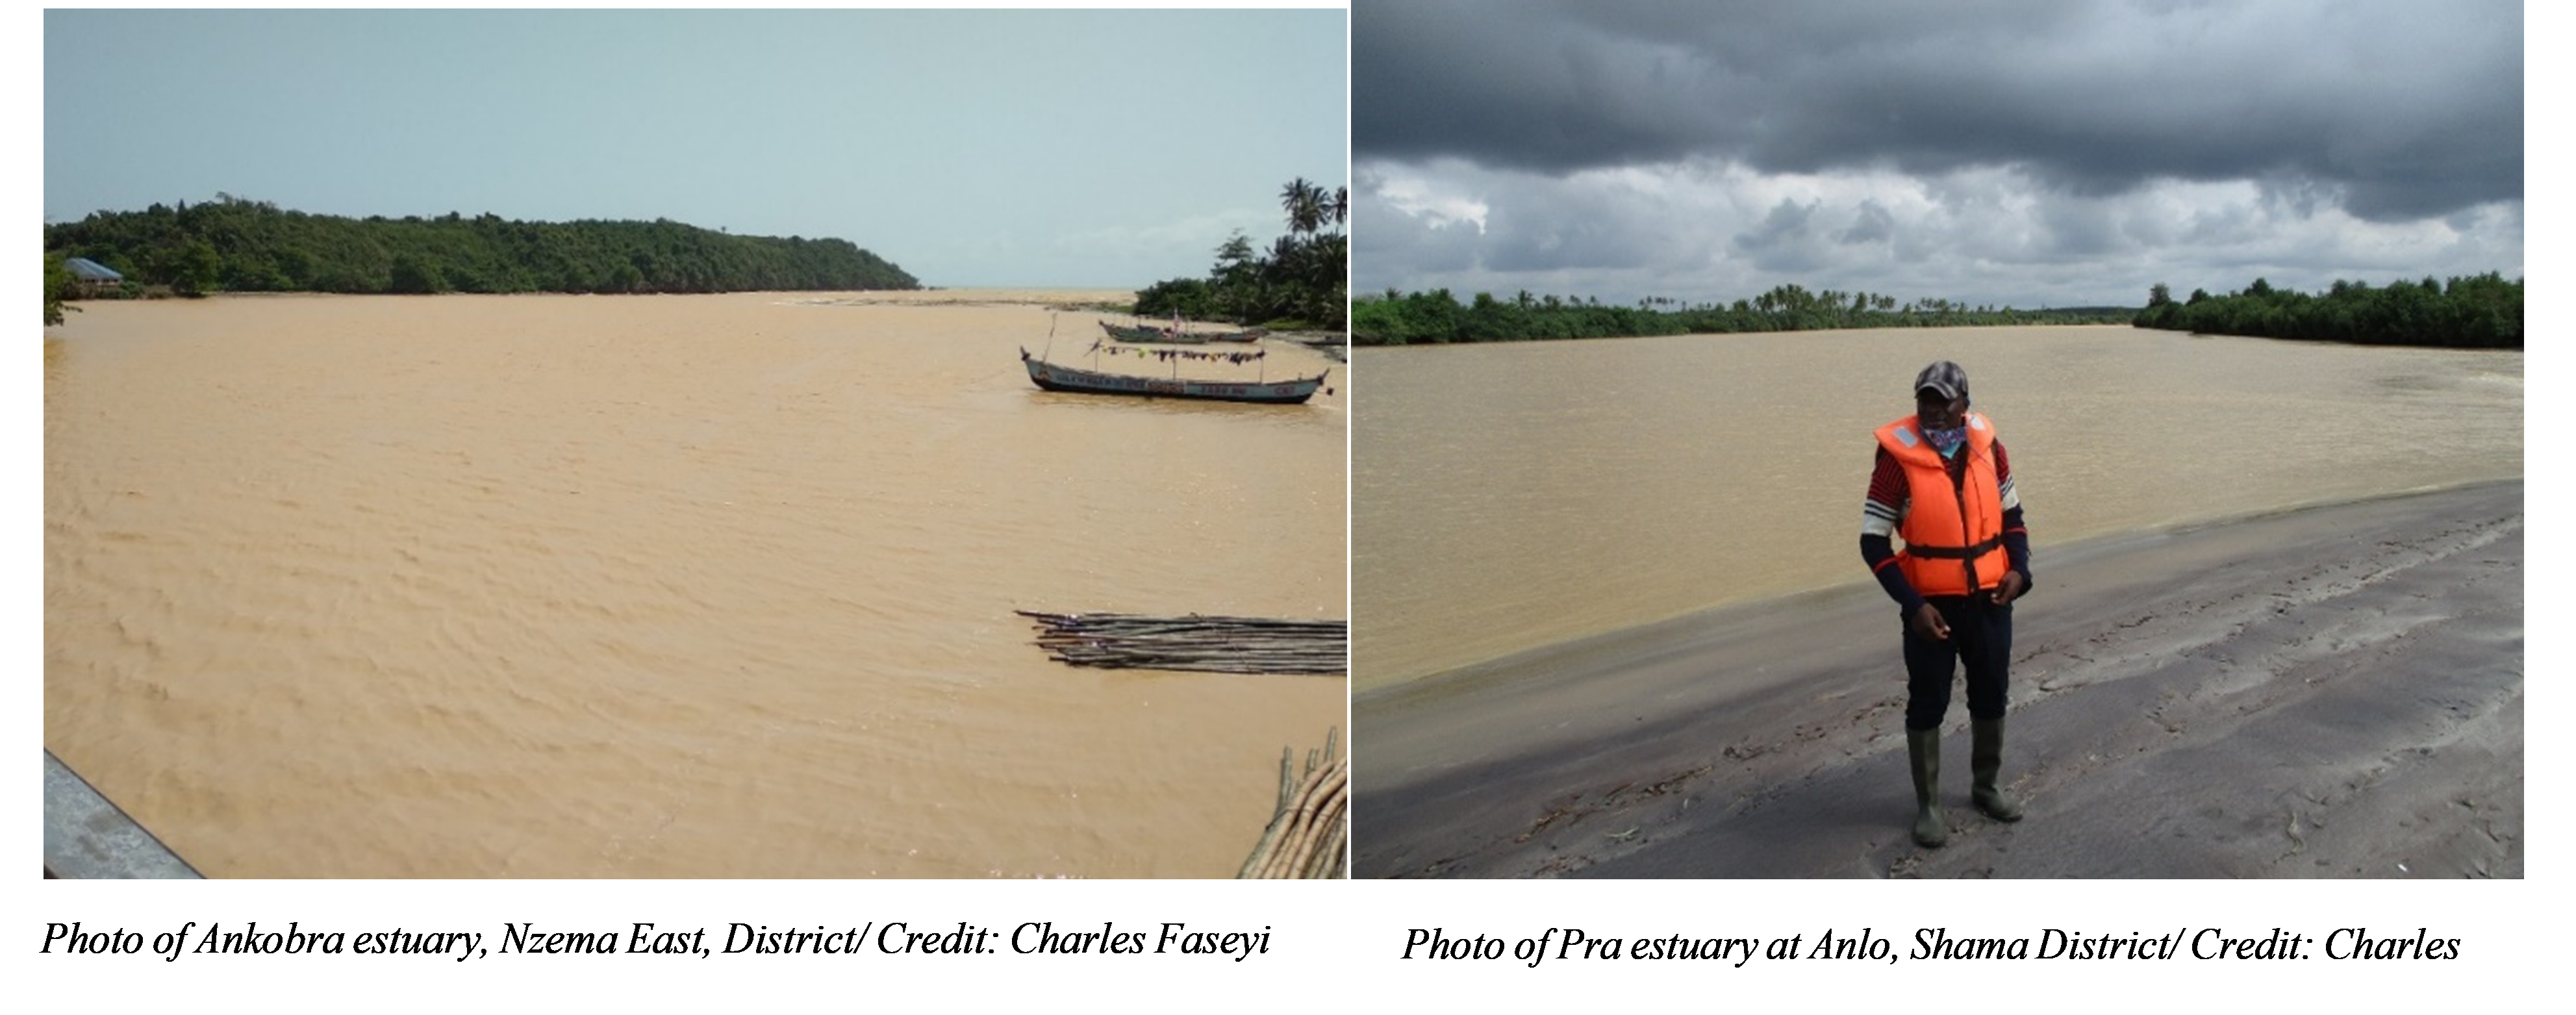 Photo of Pra estuary at Anlo, Shama and Ankobra, Credit: Charles Faseyi